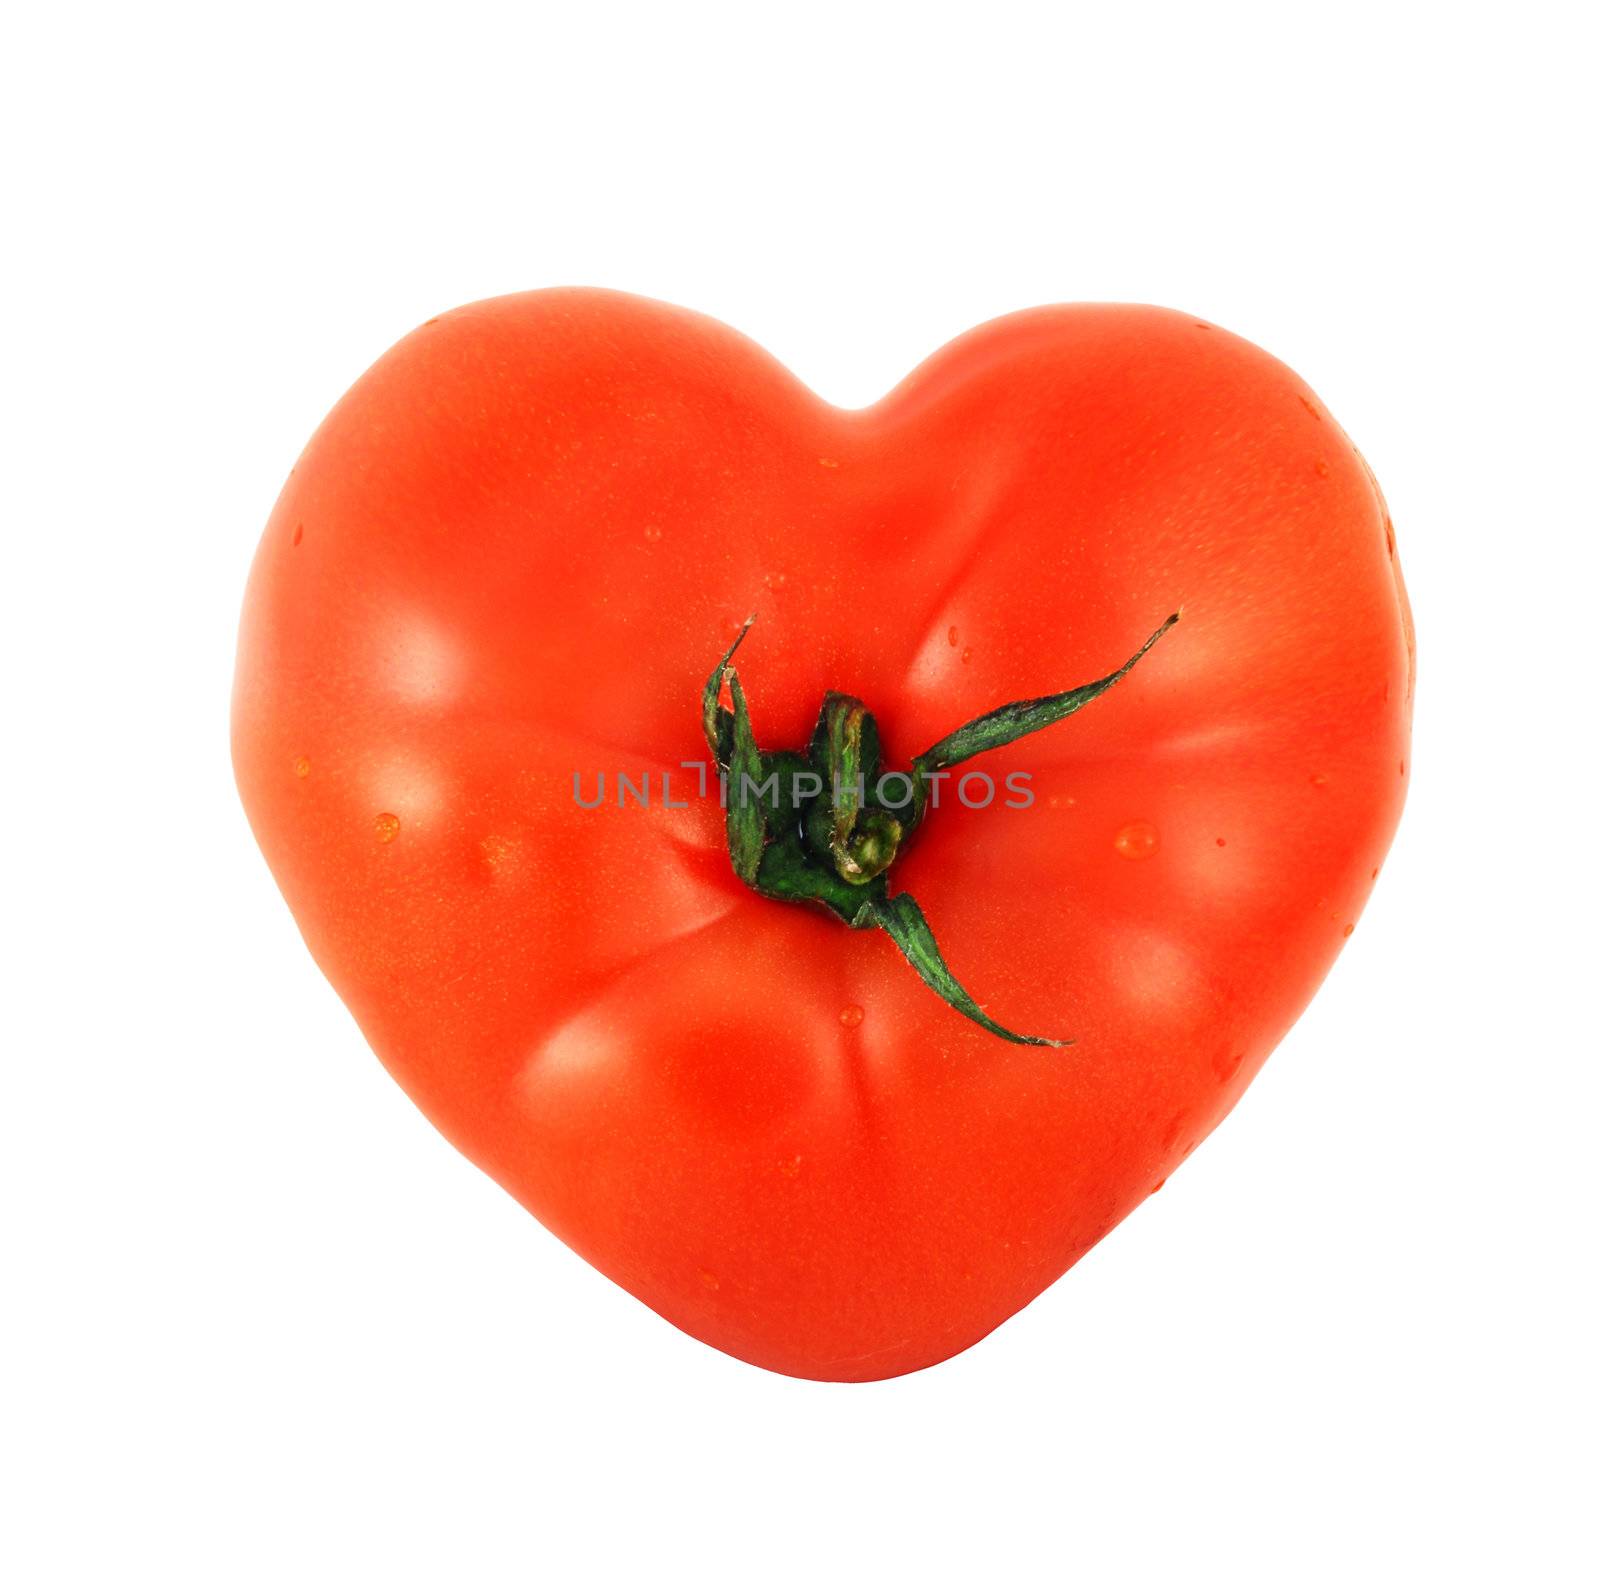 Tomato shaped like heart by destillat